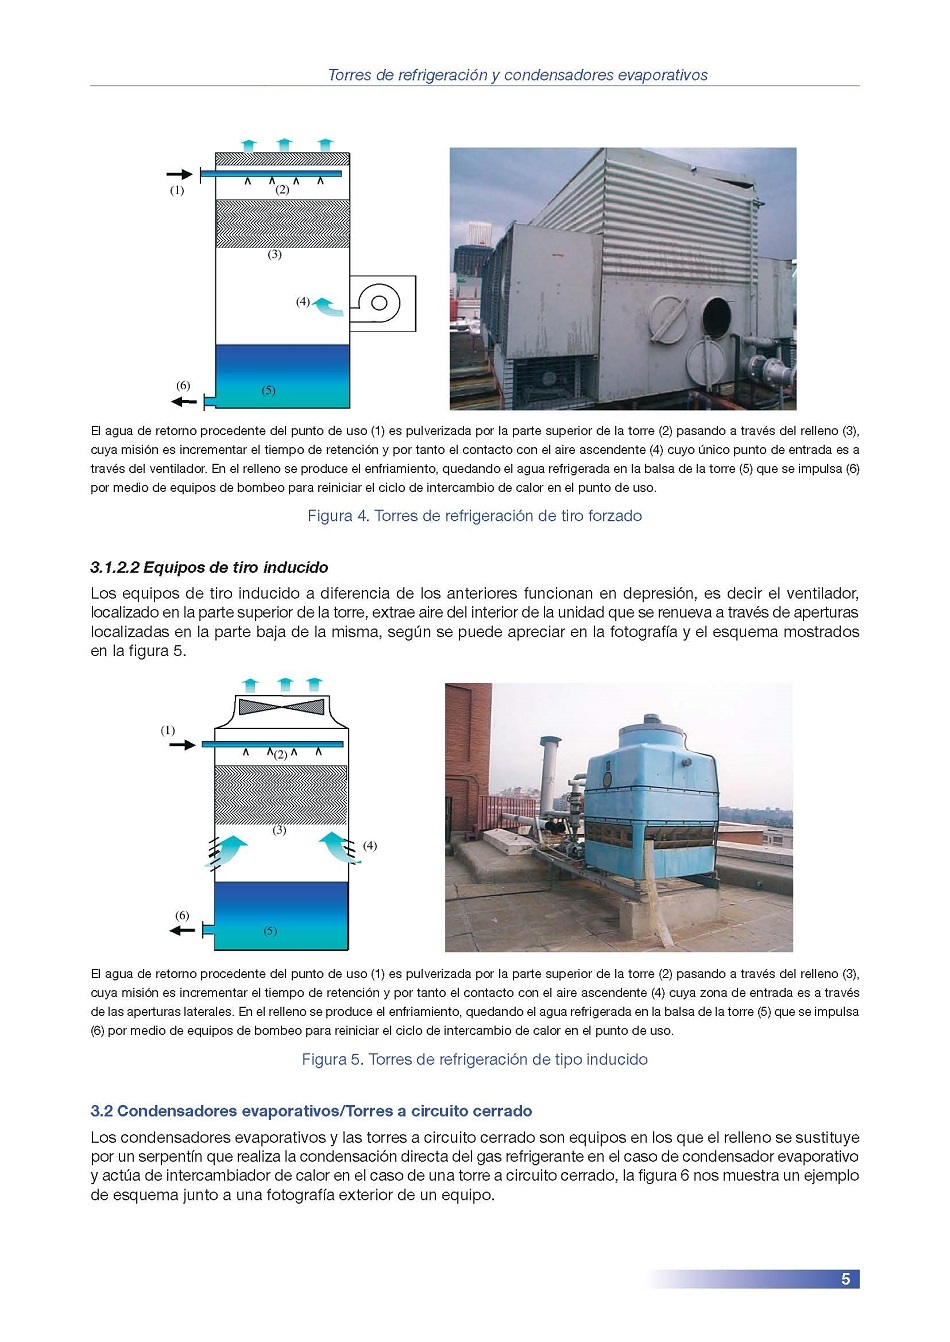 Torres de Refrigeración y Condensadores Evaporativos. Página 05